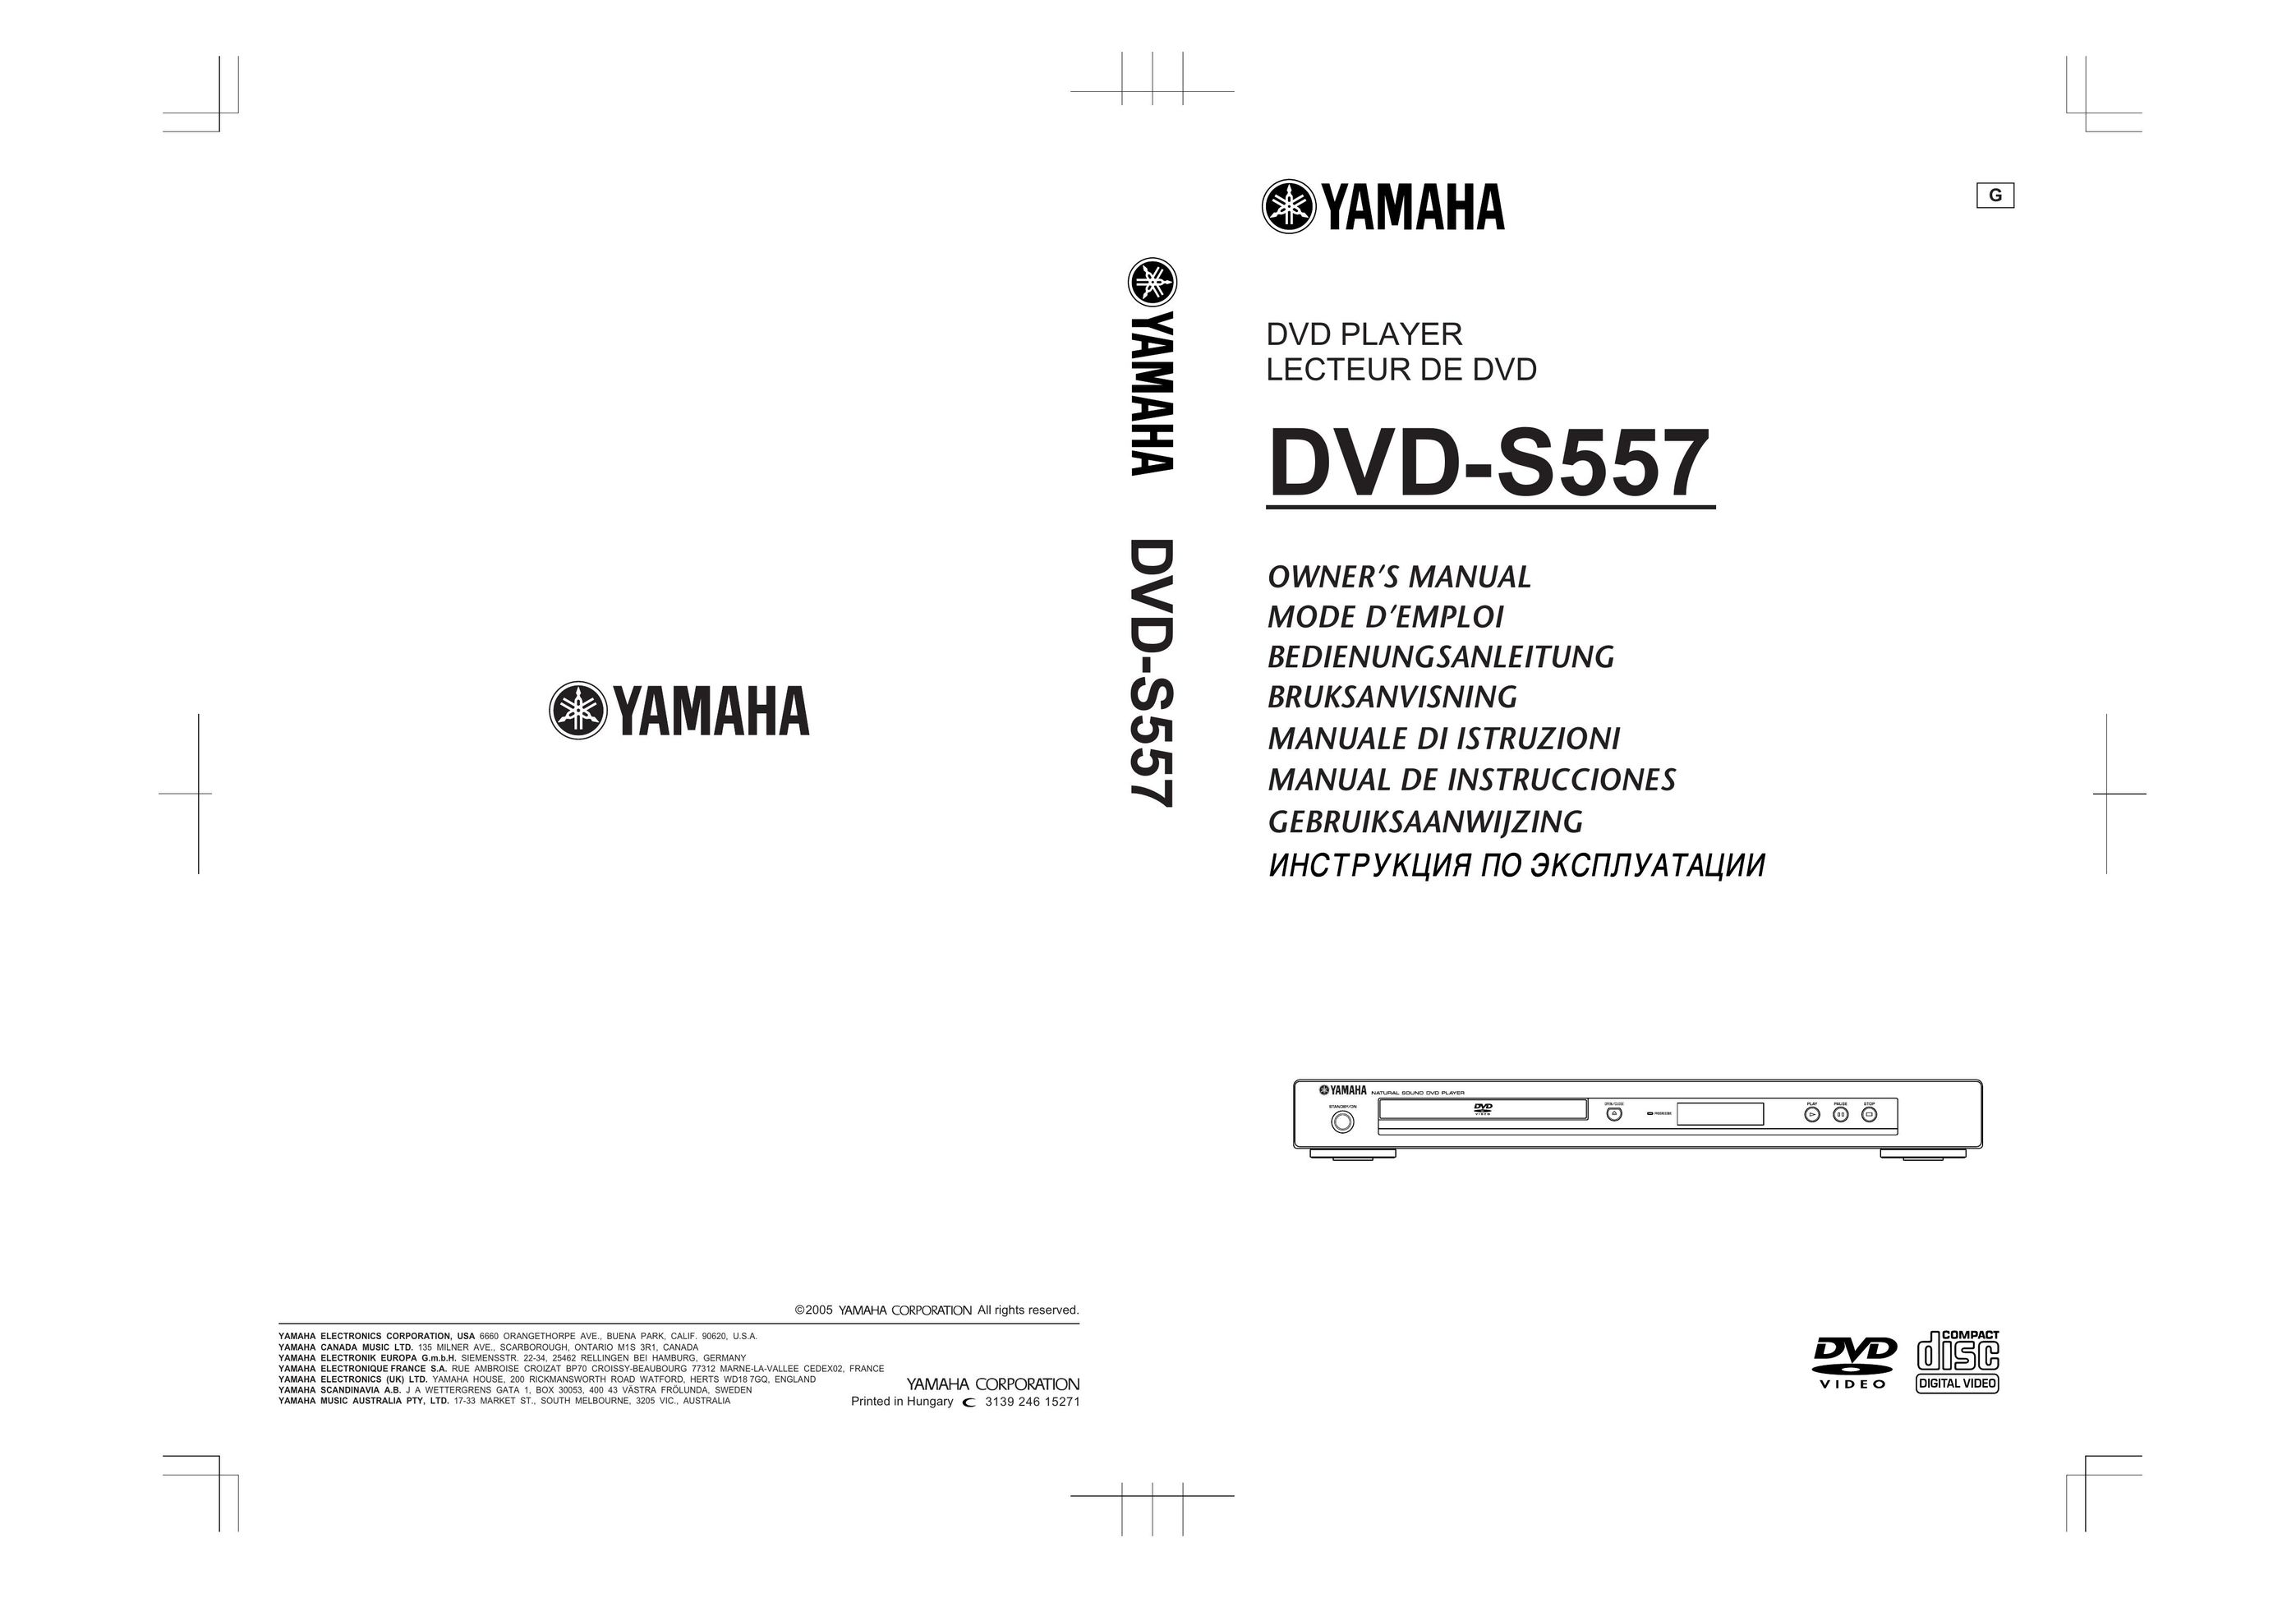 Yamaha DVD-S557 DVD Player User Manual